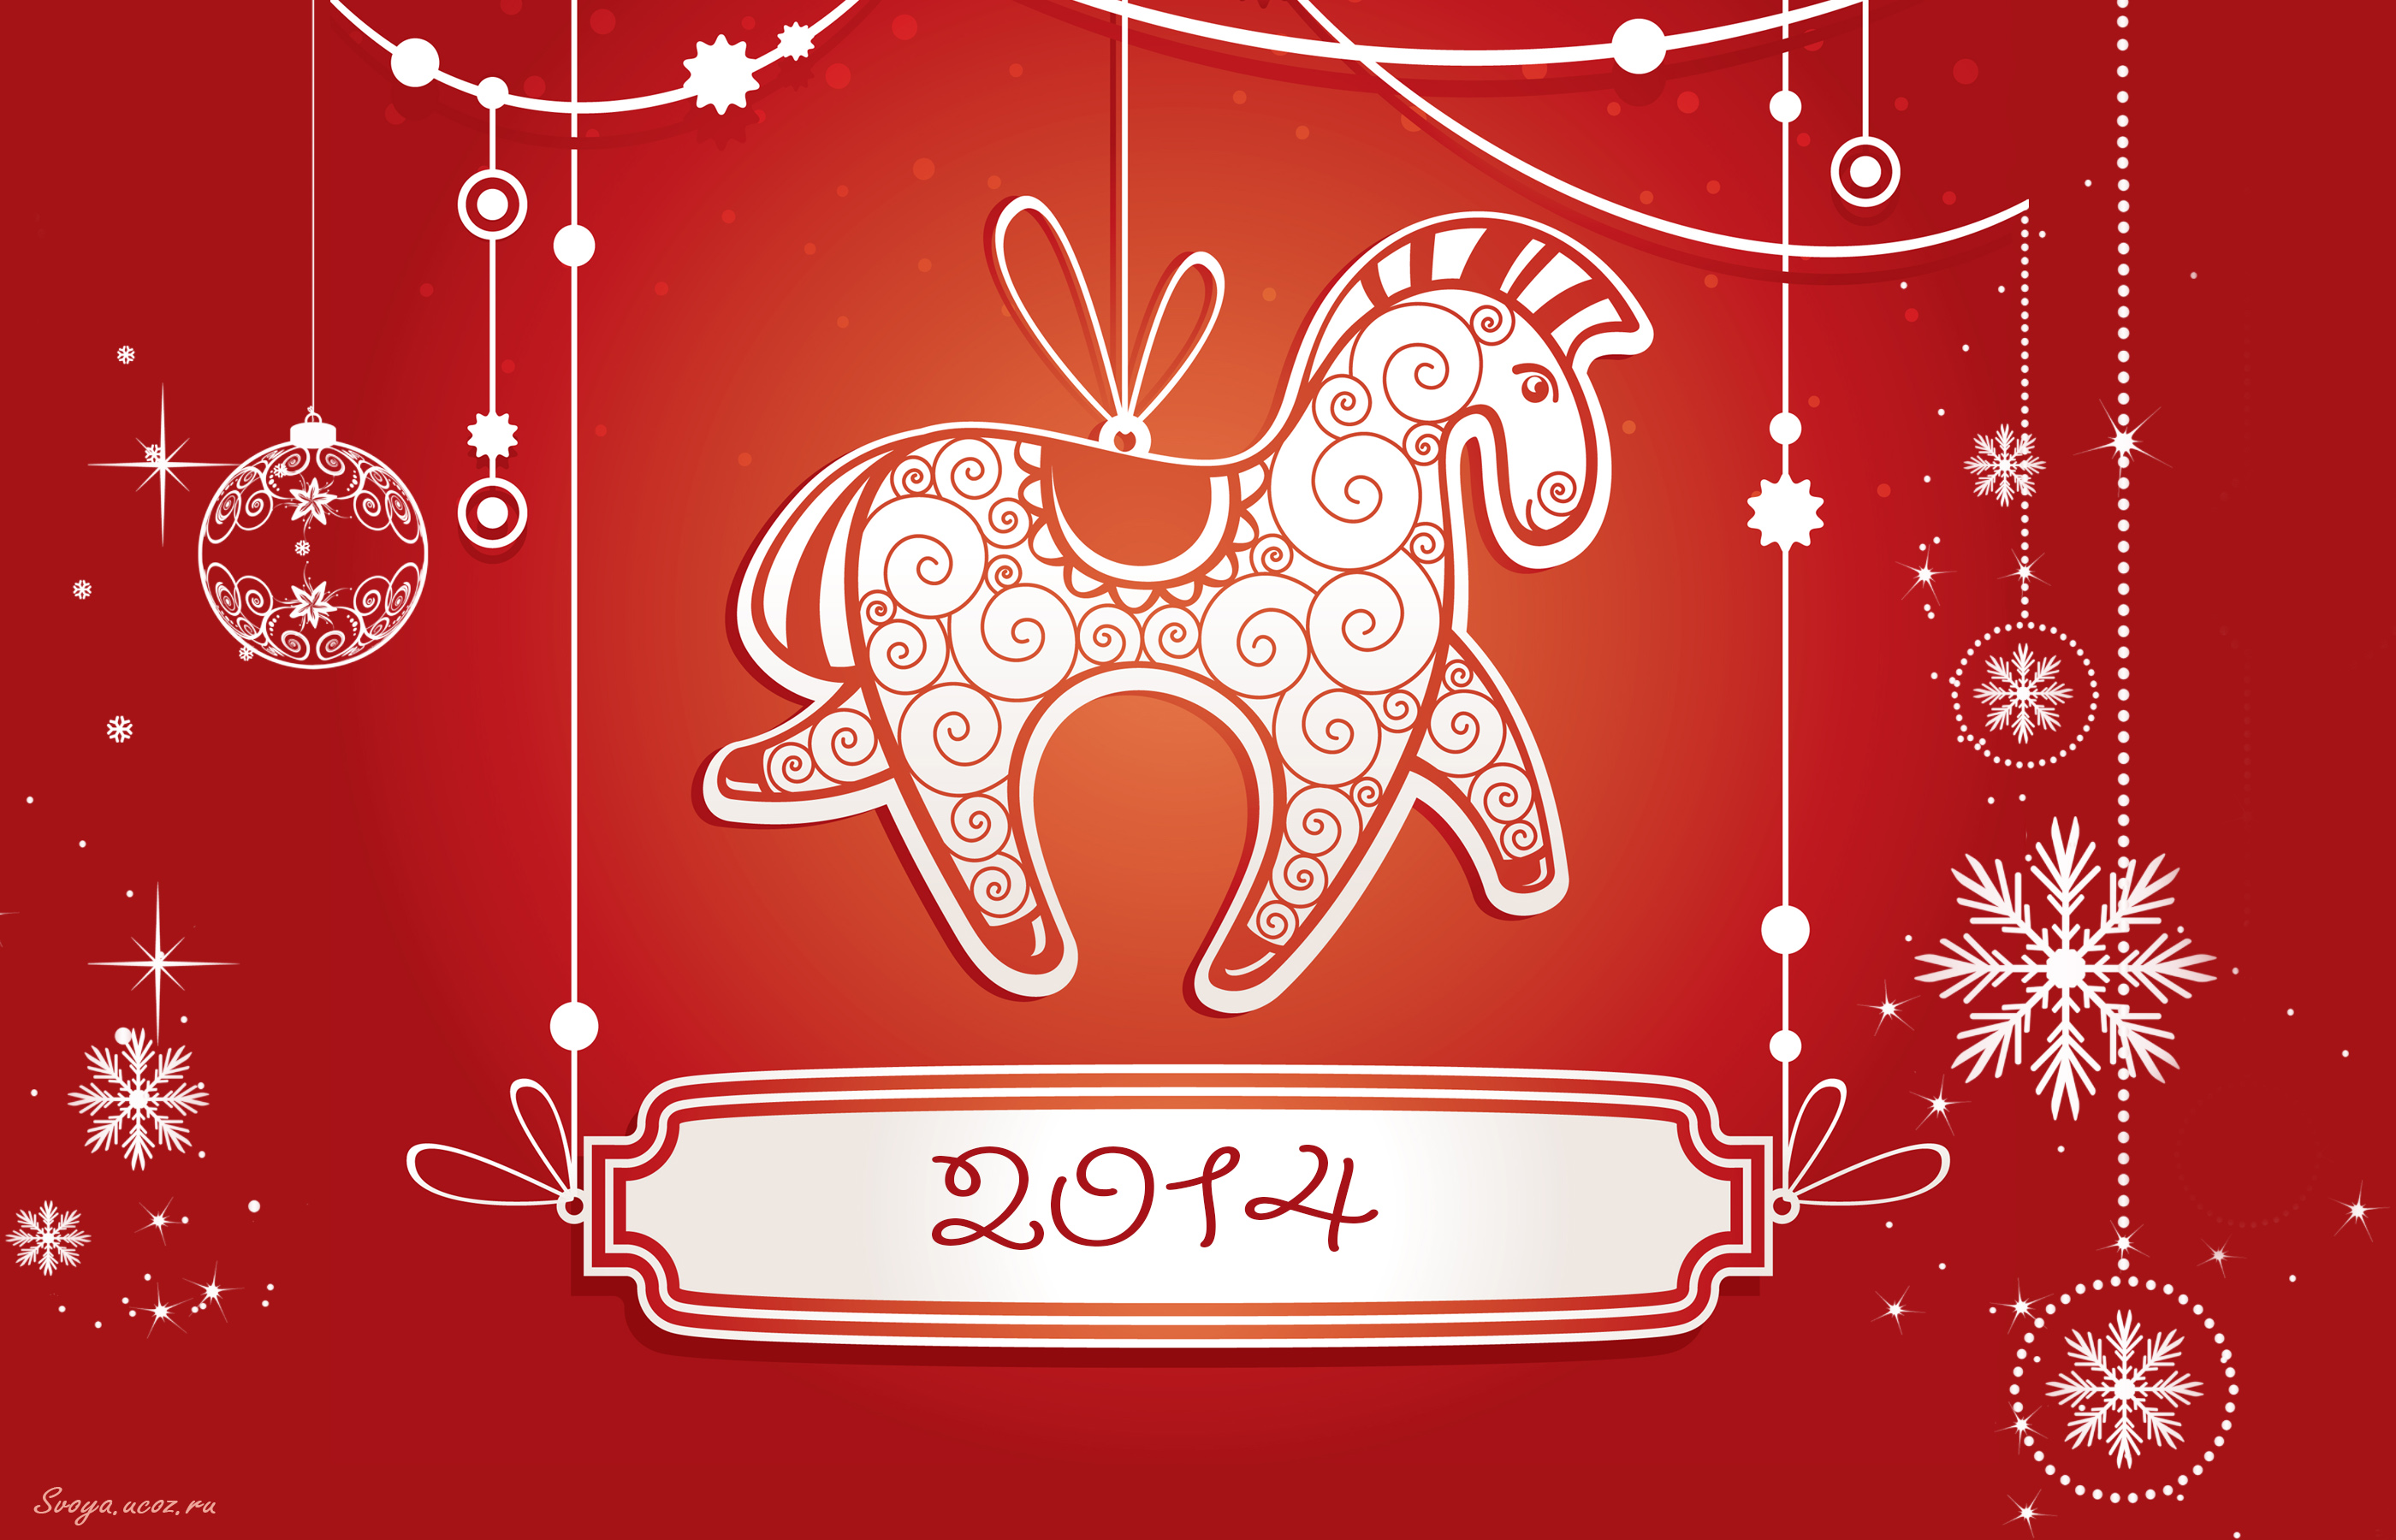 Новогодние открытки 2014 года